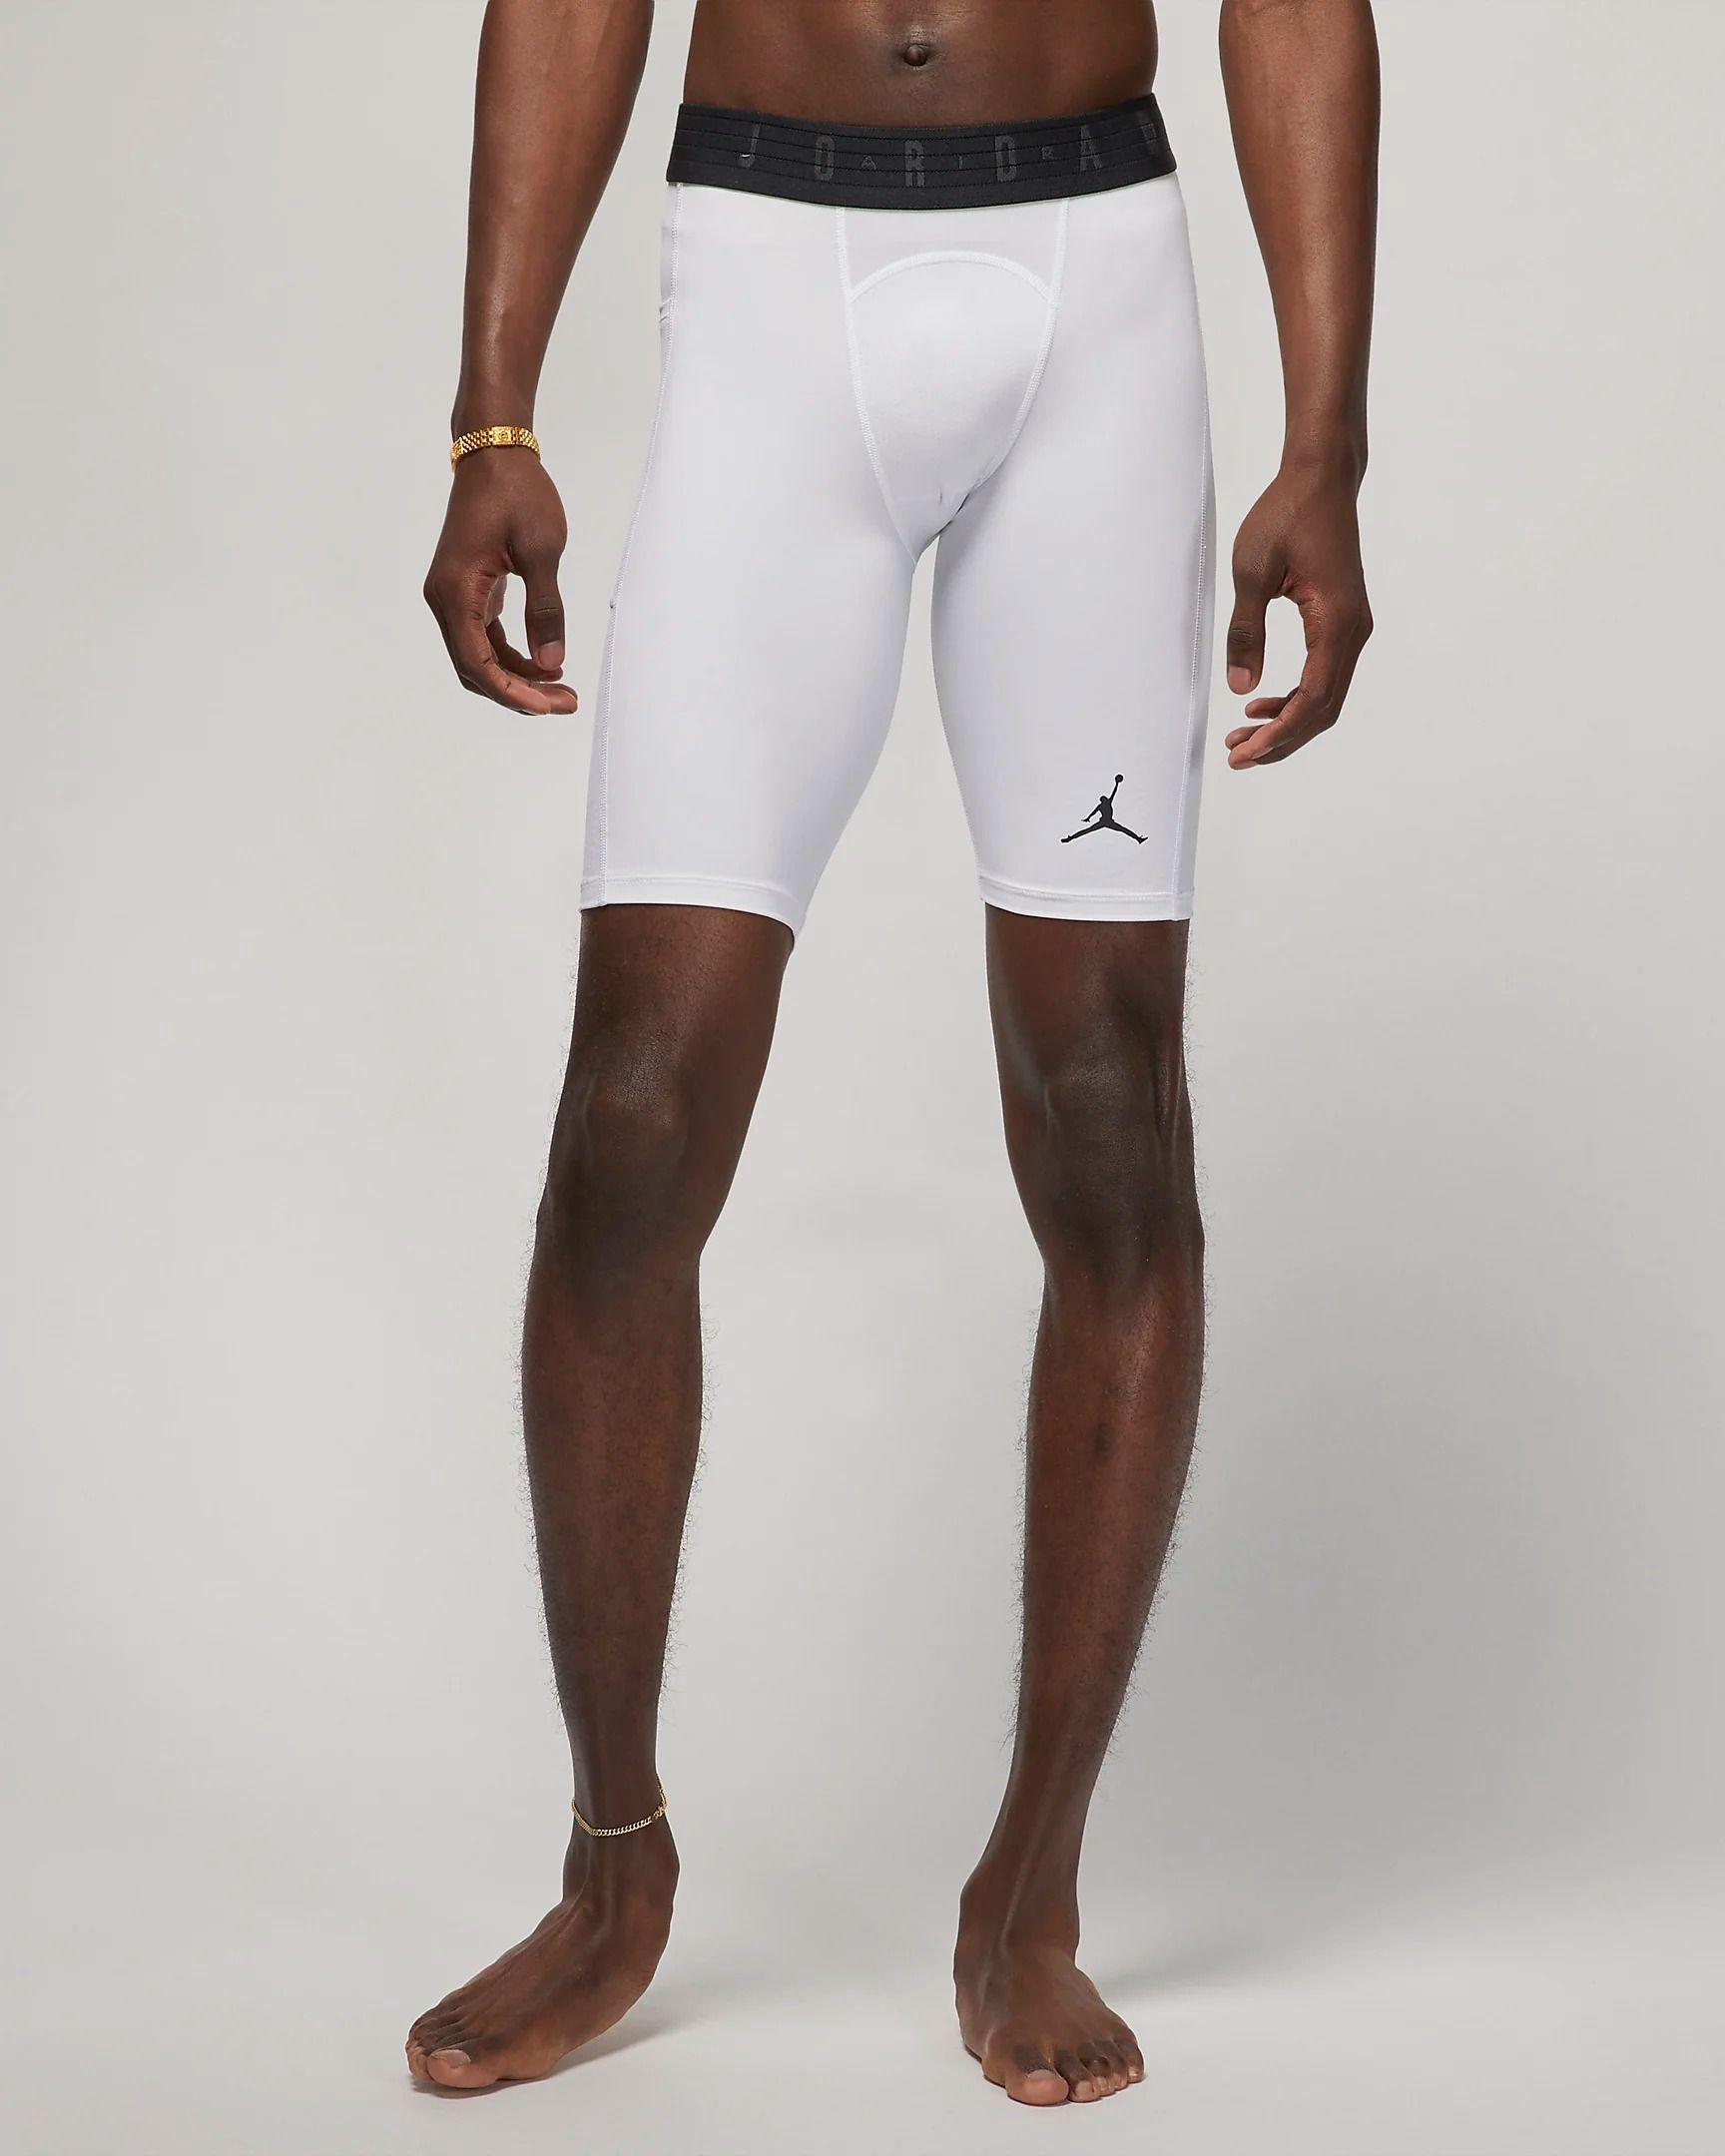 Jordan Sport Dri-FIT Men's Compression Shorts